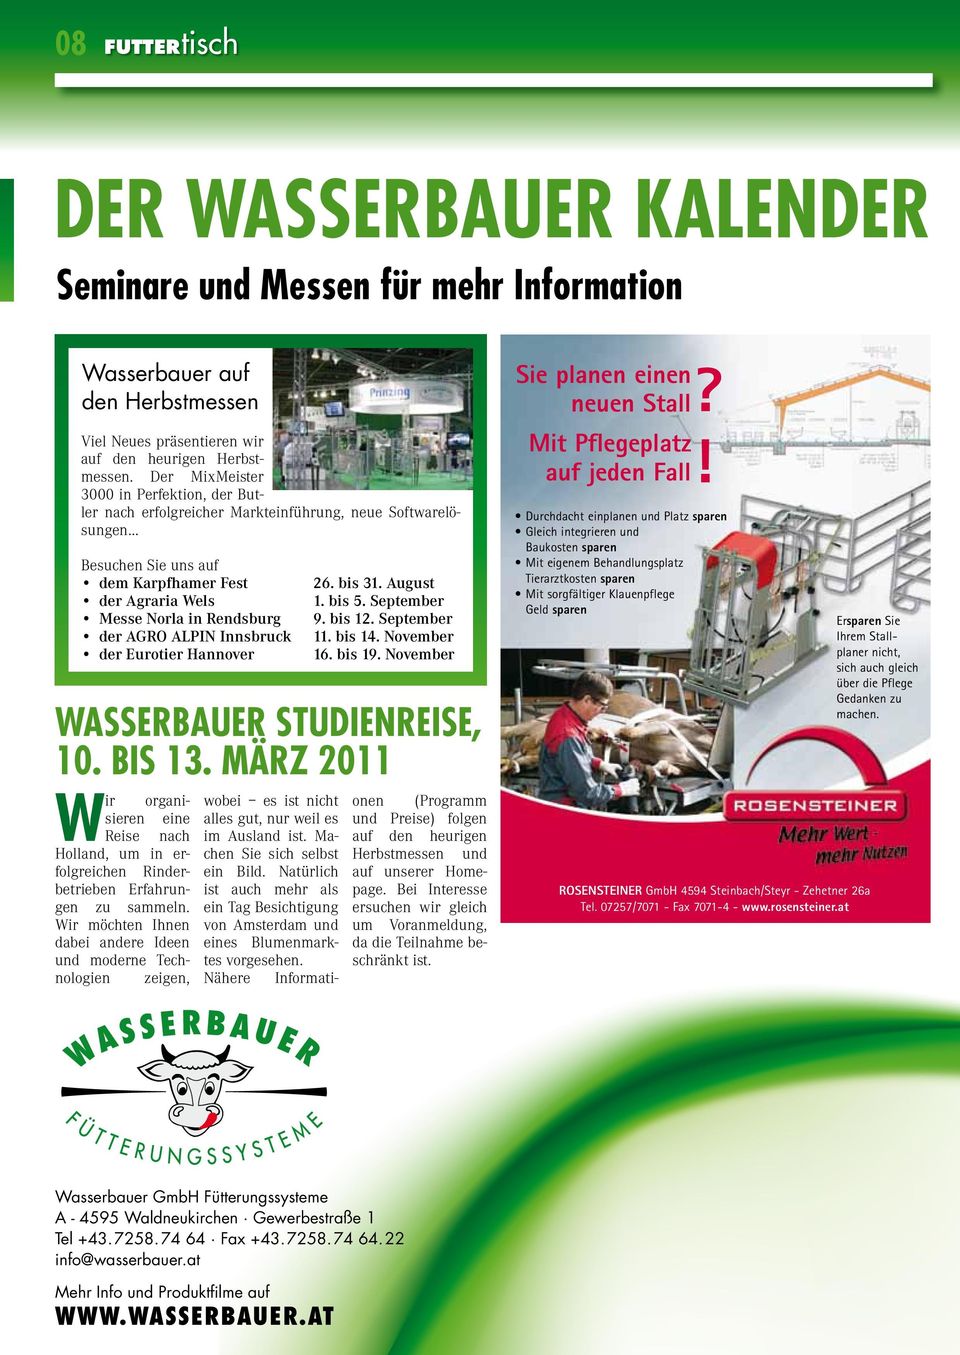 Alpin Innsbruck der Eurotier Hannover Wasserbauer Studienreise, 10. bis 13. März 2011 W ir organisieren eine Reise nach Holland, um in erfolgreichen Rinderbetrieben Erfahrungen zu sammeln.